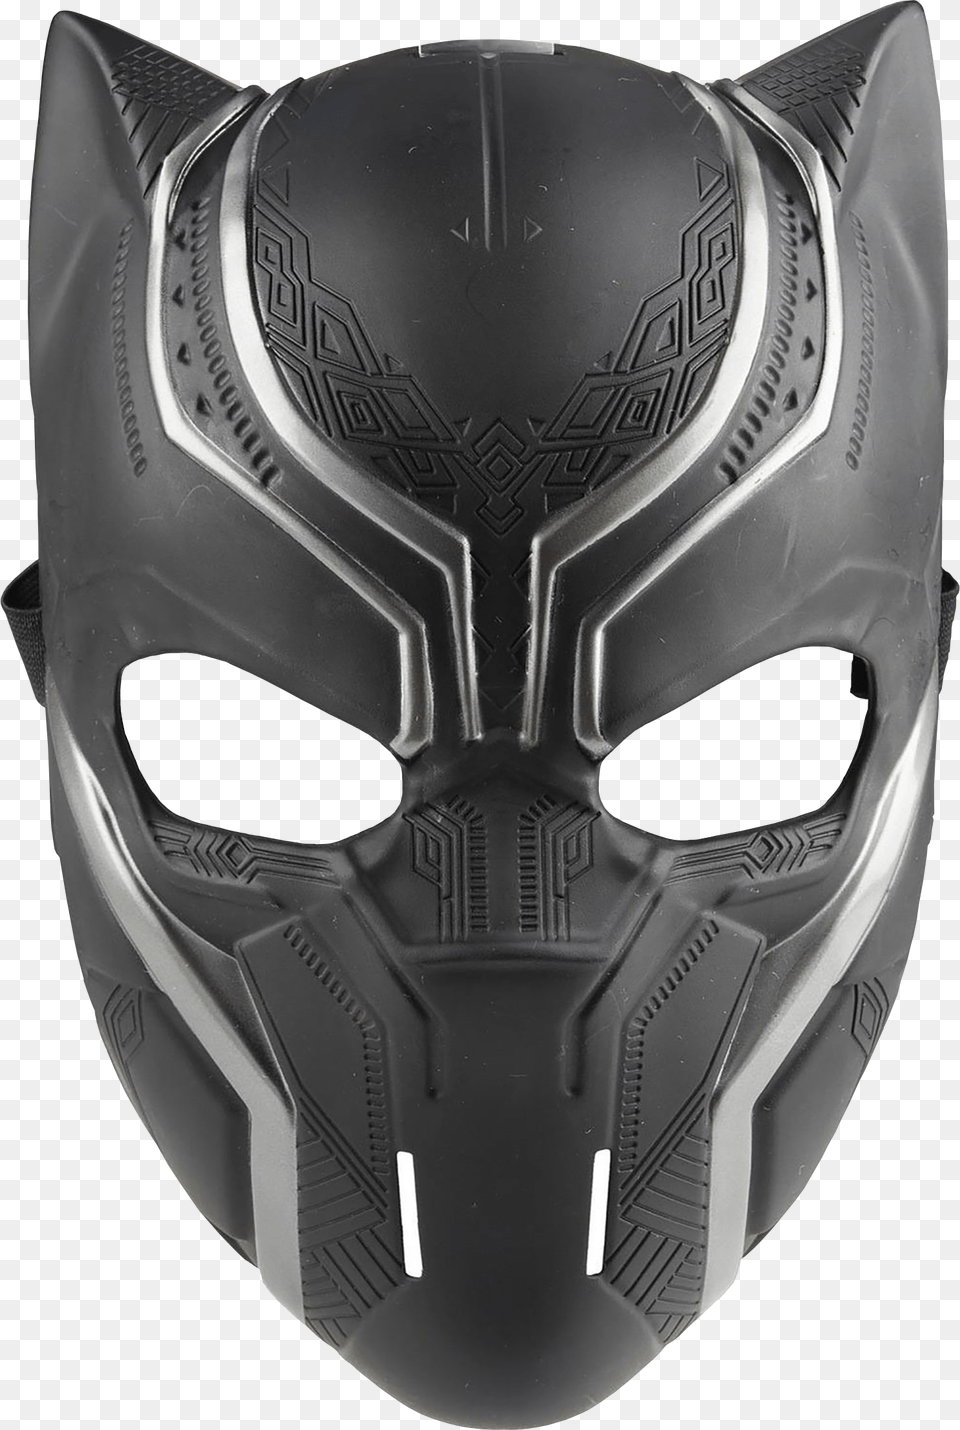 Black Panther Mask Printable, Helmet Free Transparent Png